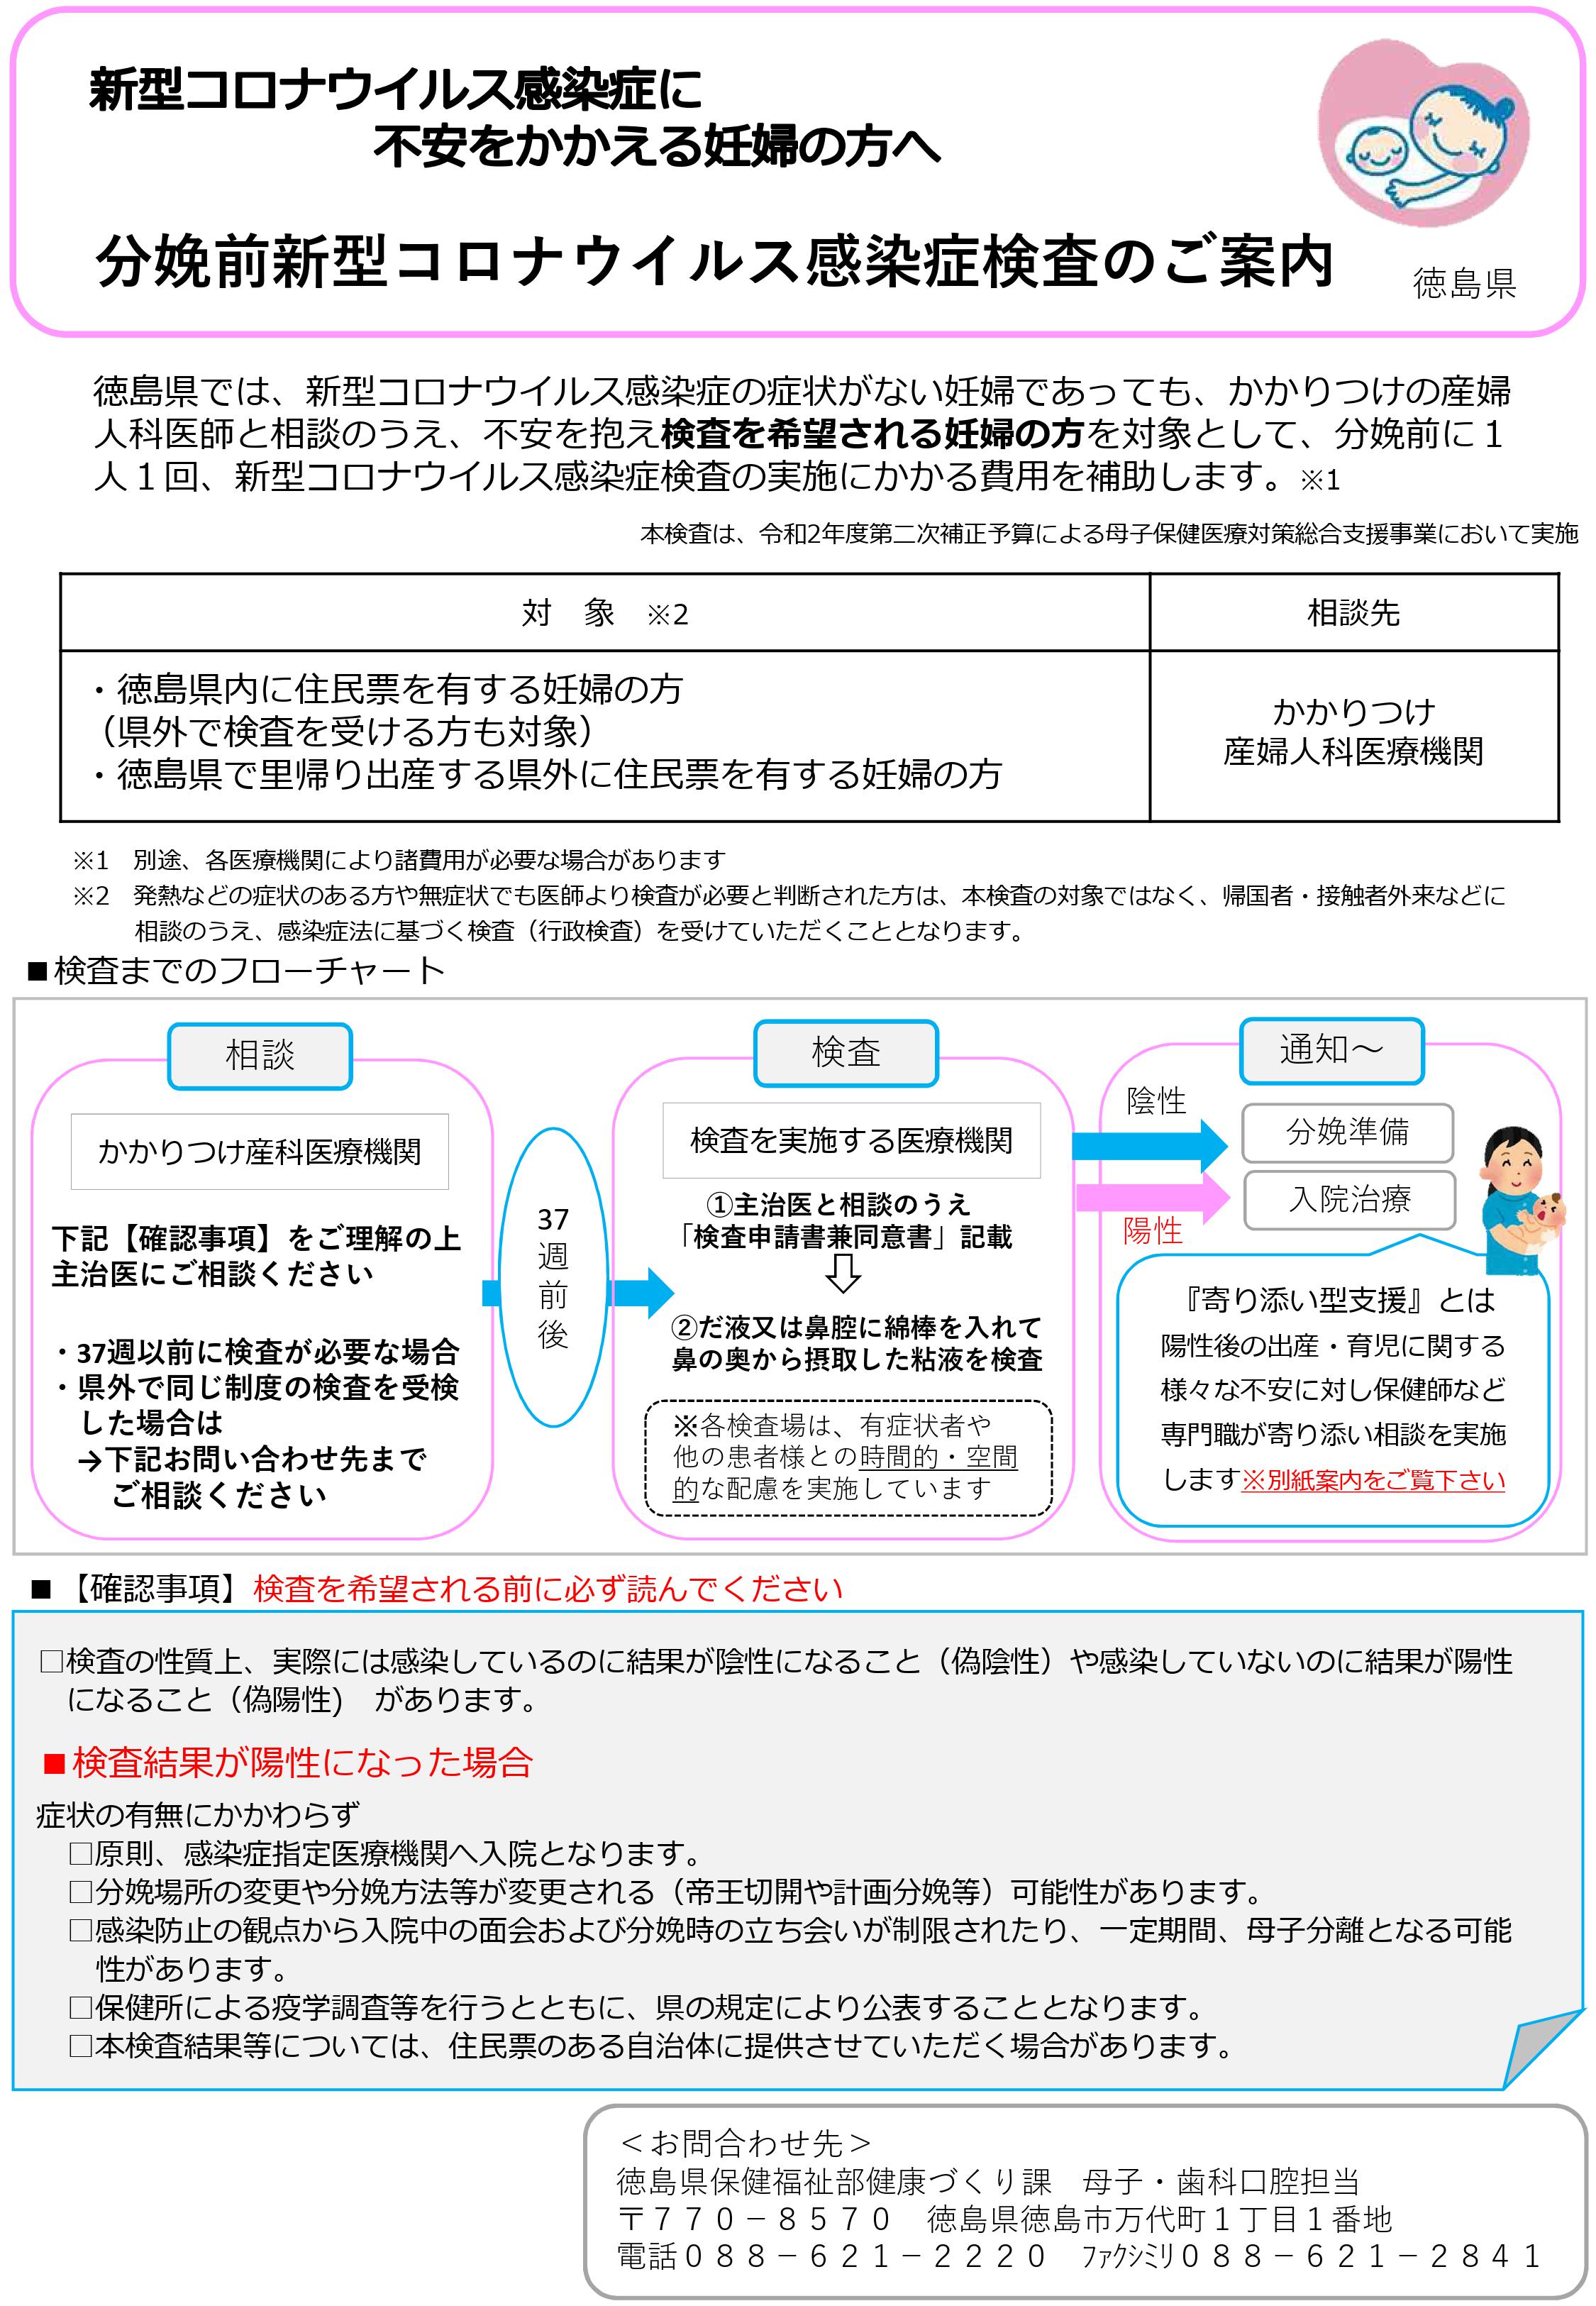 県 コロナ 徳島 徳島県、コロナ警報を最低水準に引き下げ: 日本経済新聞